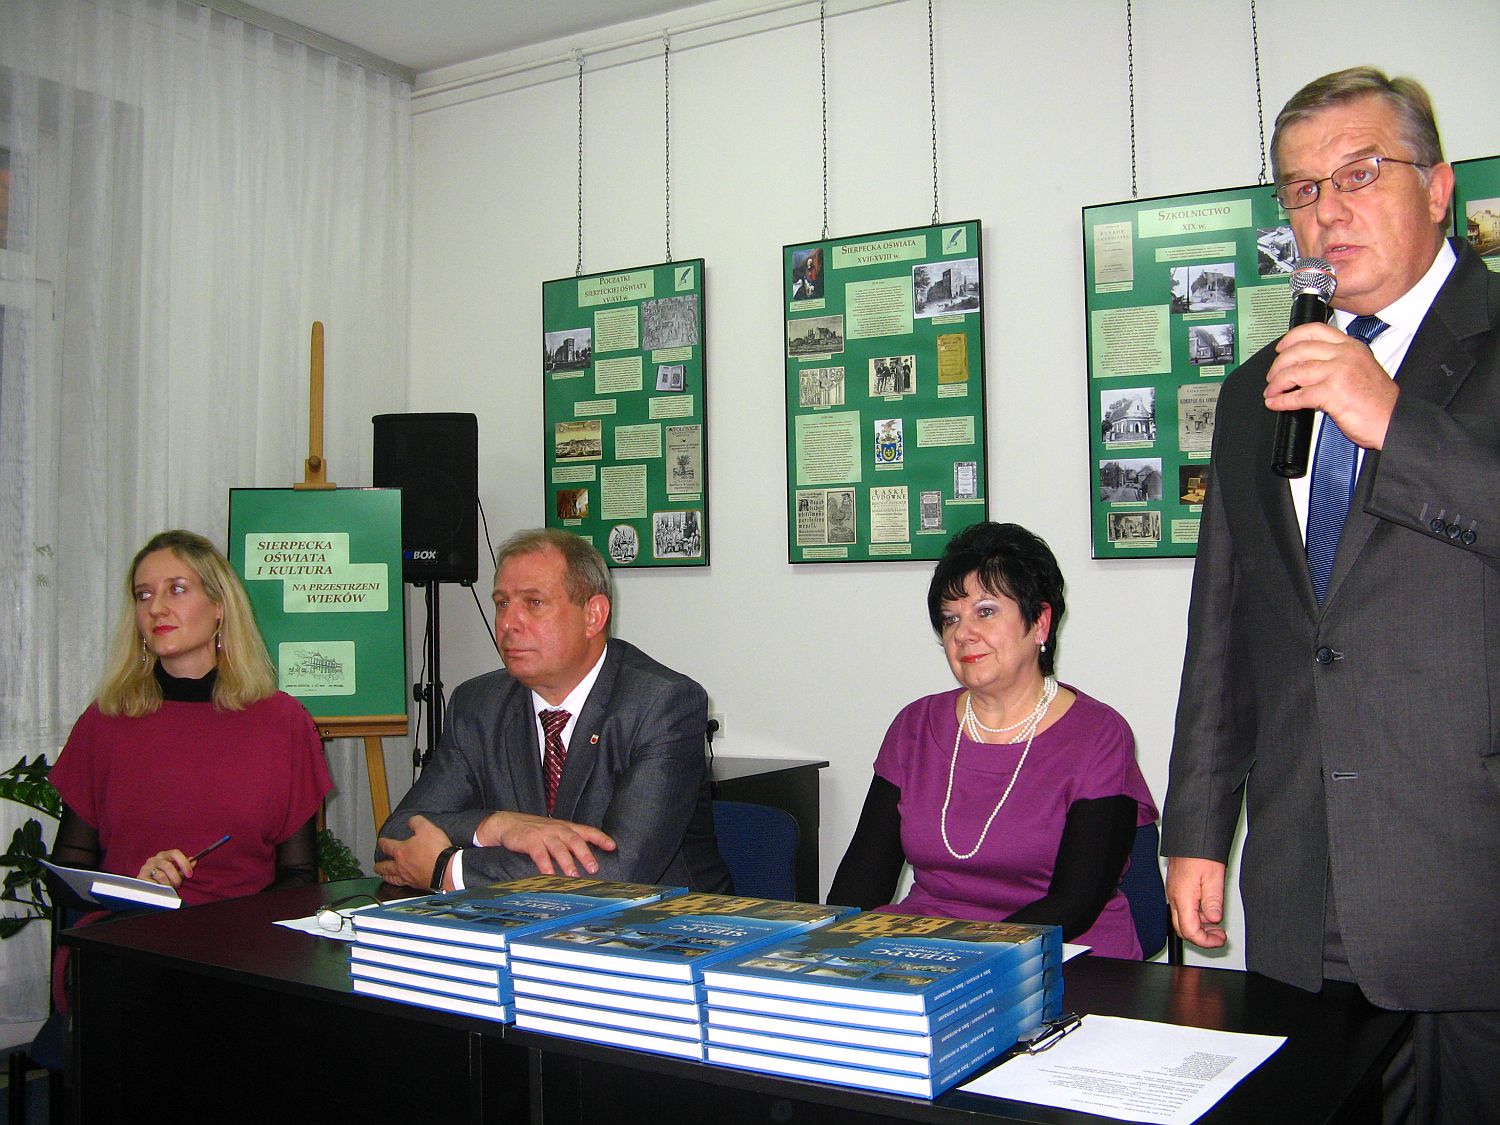 Burmistrz Marek Kośmider opowiedział o chwili, gdy zrodziła się idea powstania albumu.